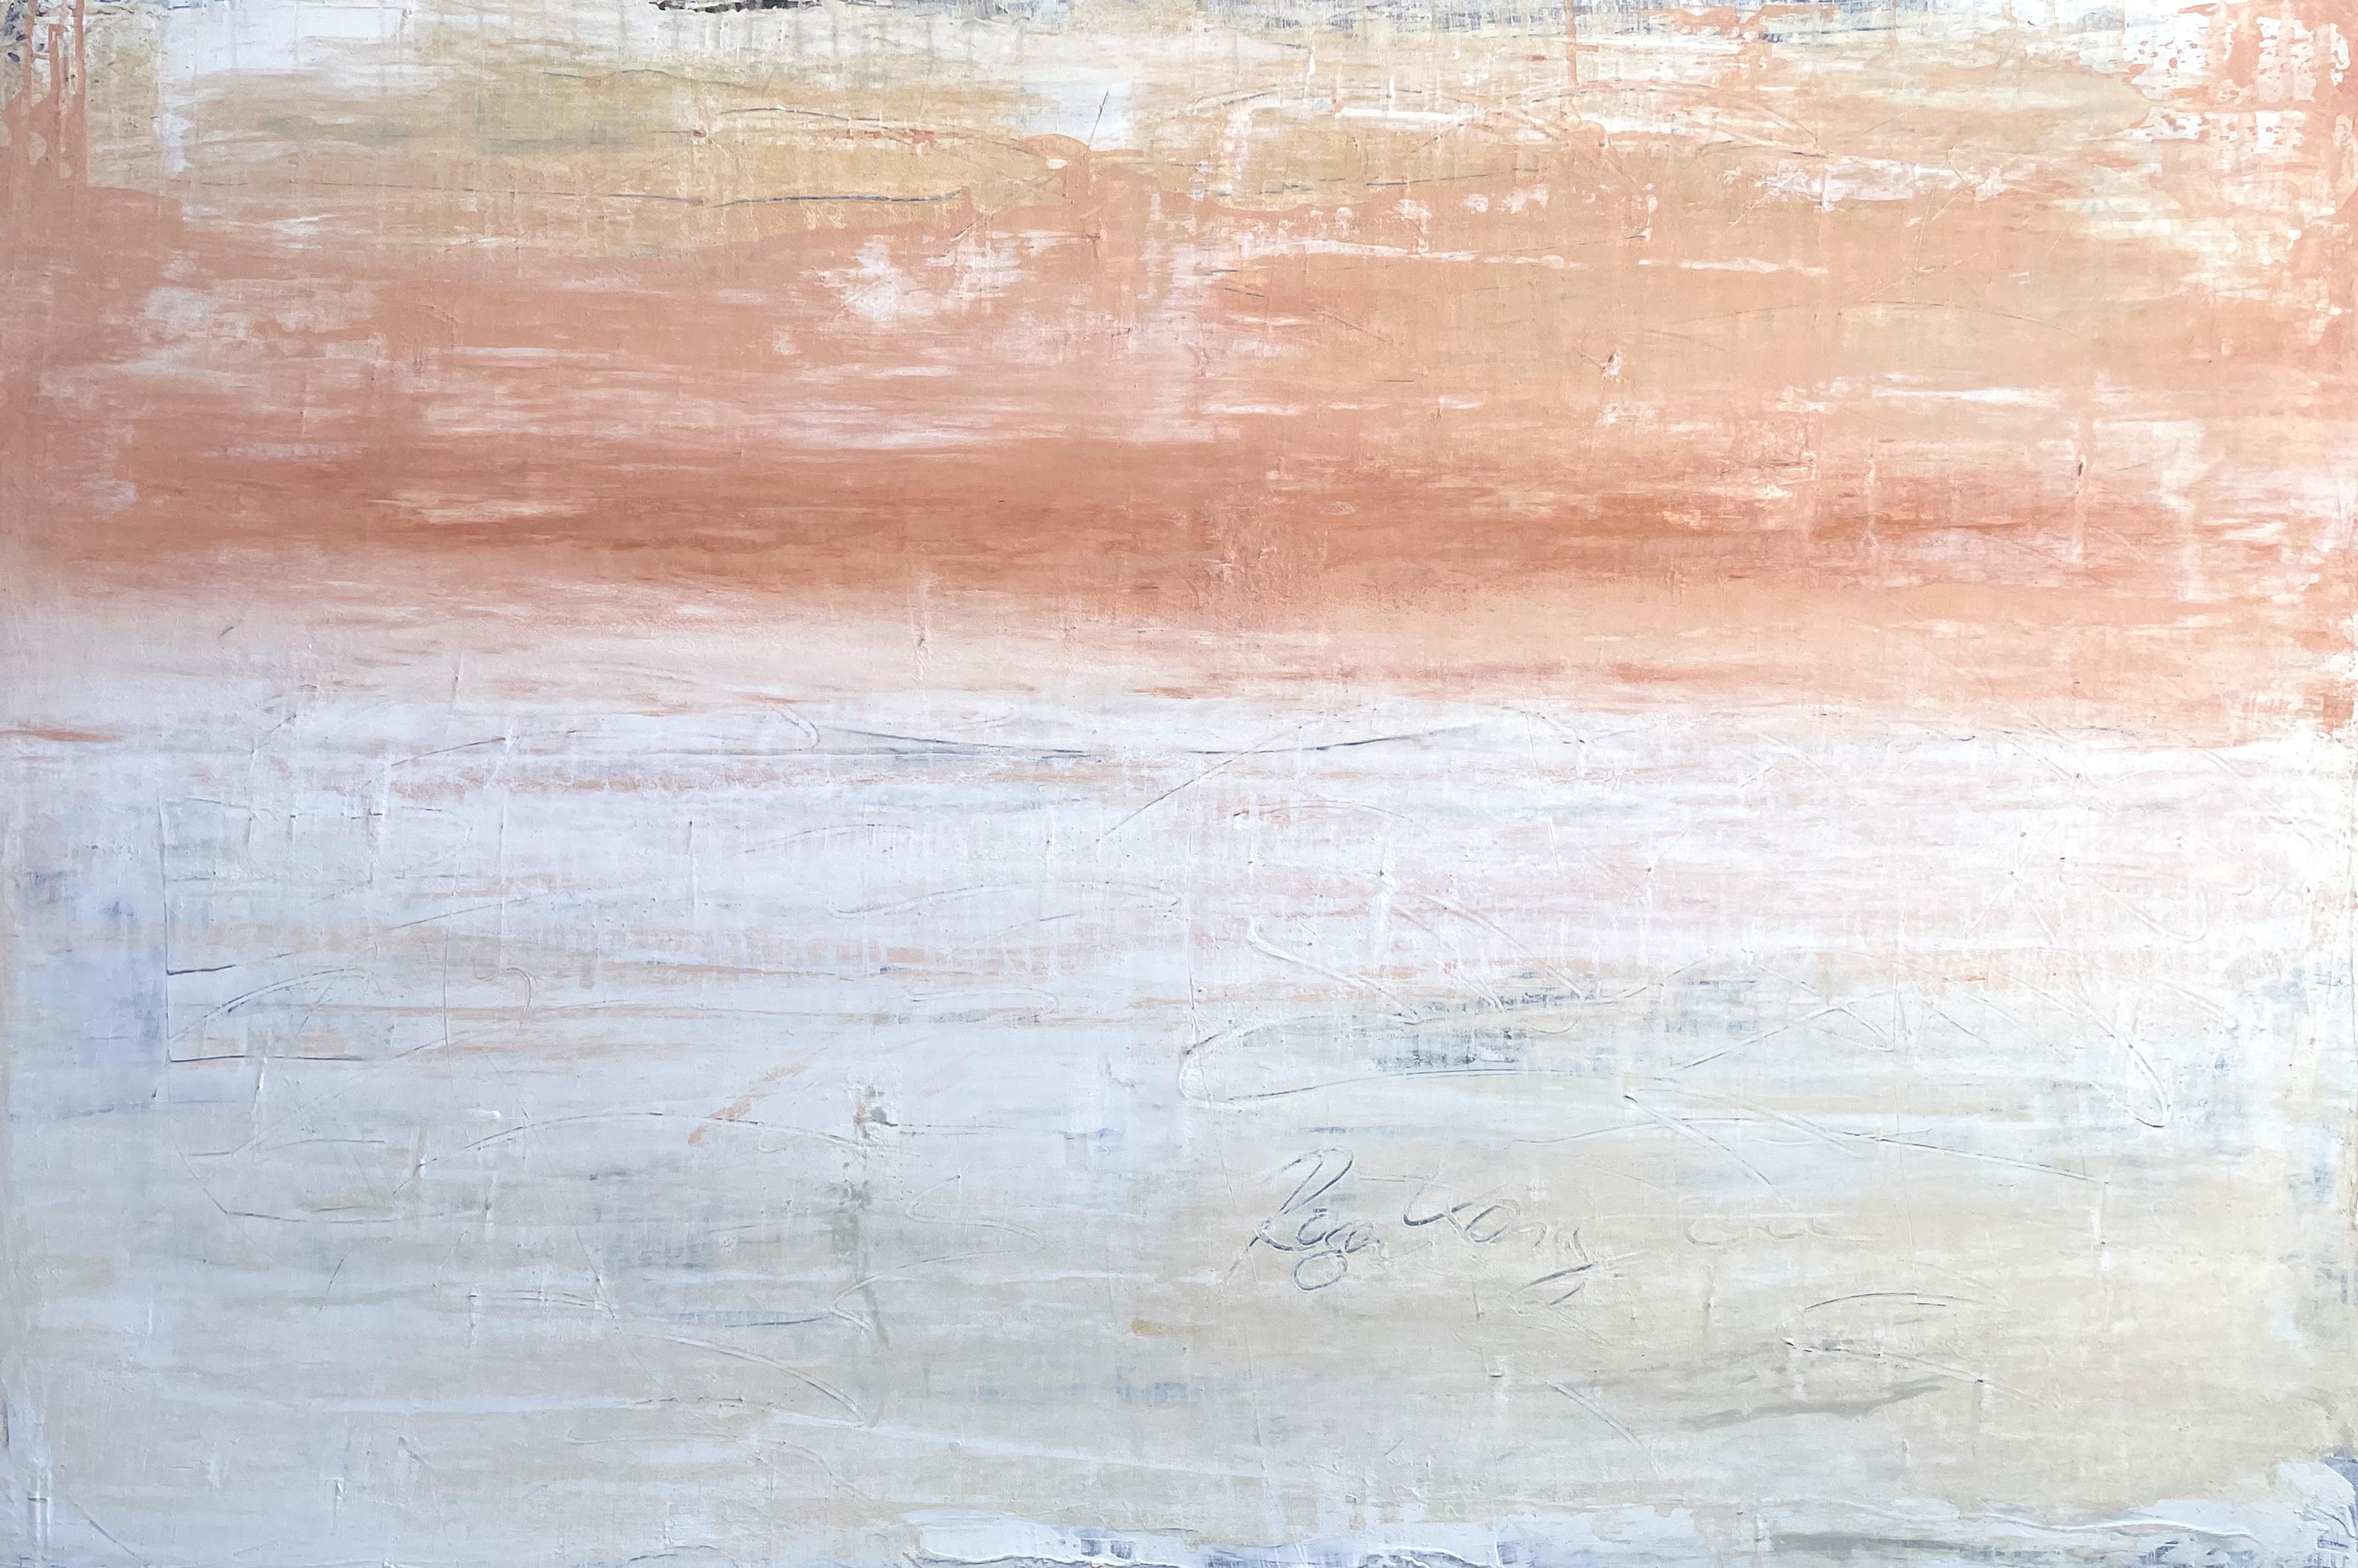 "Abstract Sunshine", RWE4, Minimalism, Seascape Painting, Acrylic 